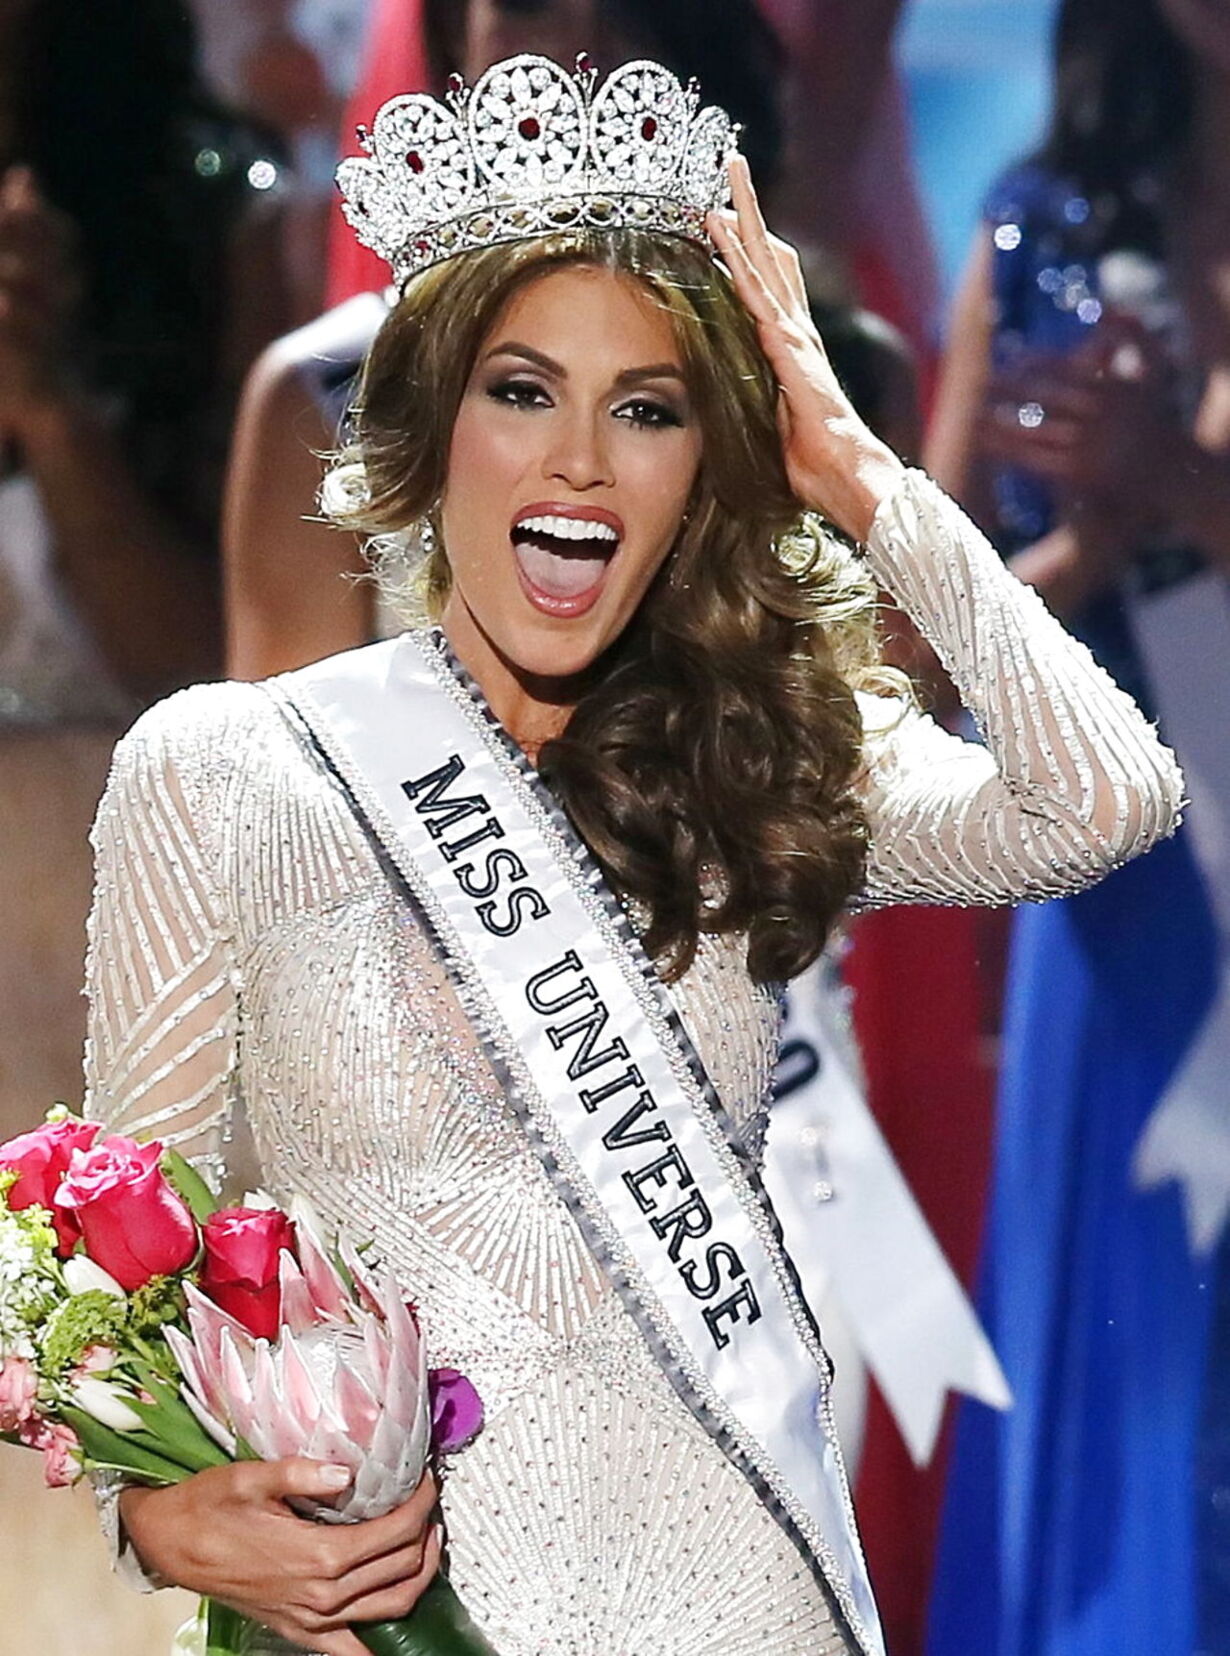 Miss. Мисс Вселенная Габриэла Ислер. Мисс Венесуэла Габриэла Ислер. «Мисс Вселенная 2013»: Габриэла Ислер. Мисс Вселенная-2013» — победительница Габриэла Ислер, Венесуэла.